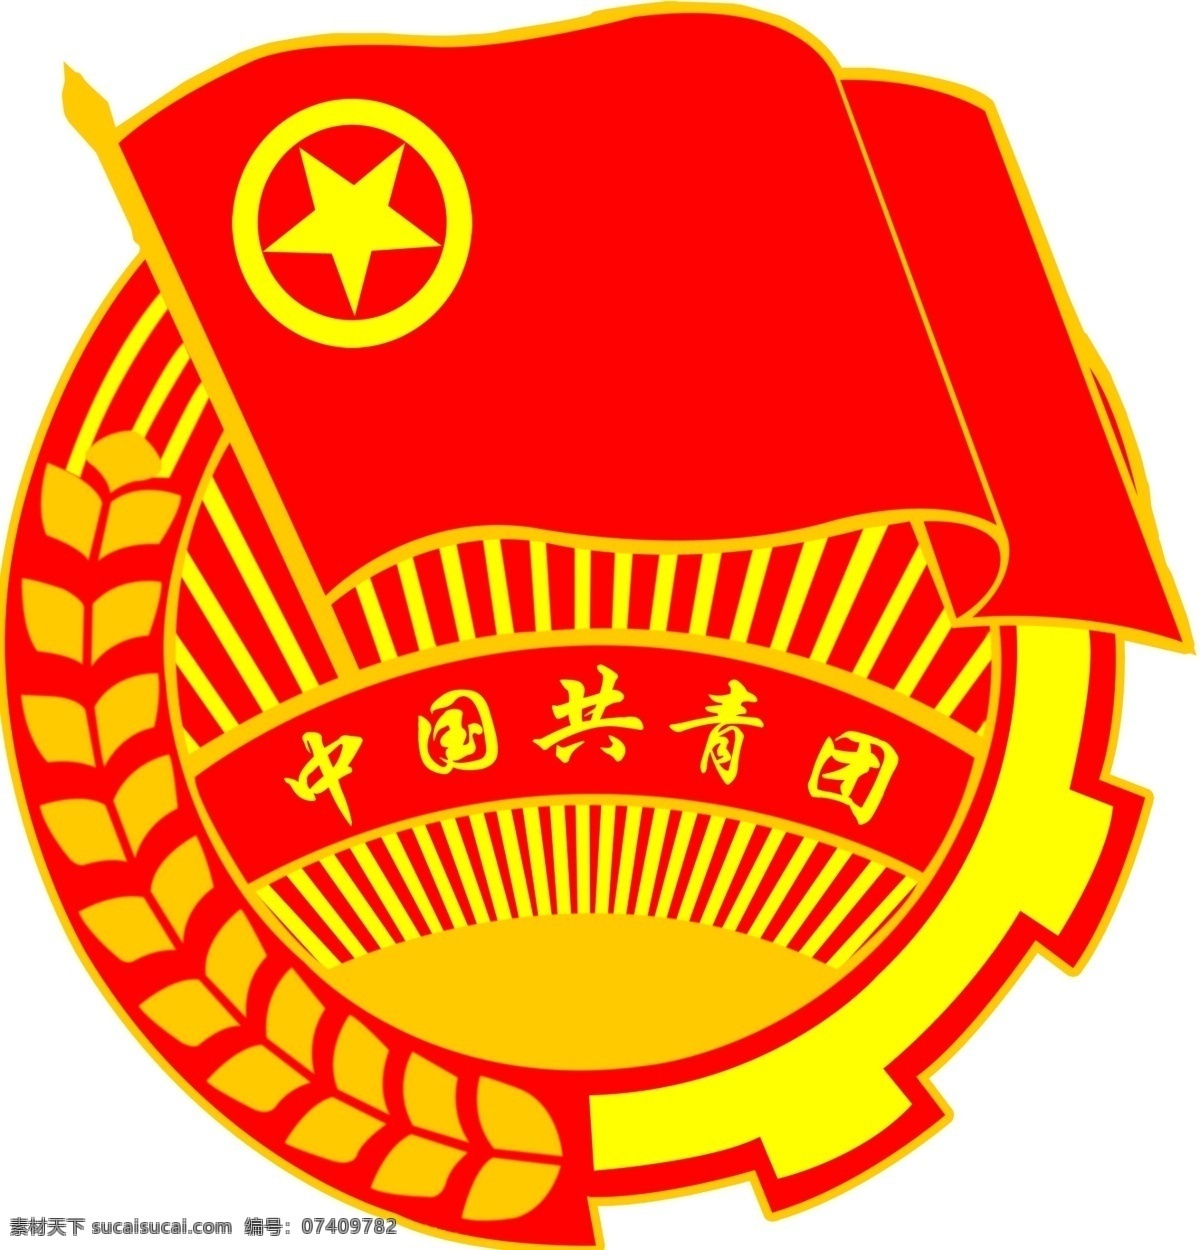 中国共青团 团徽 徽 其他模版 广告设计模板 源文件